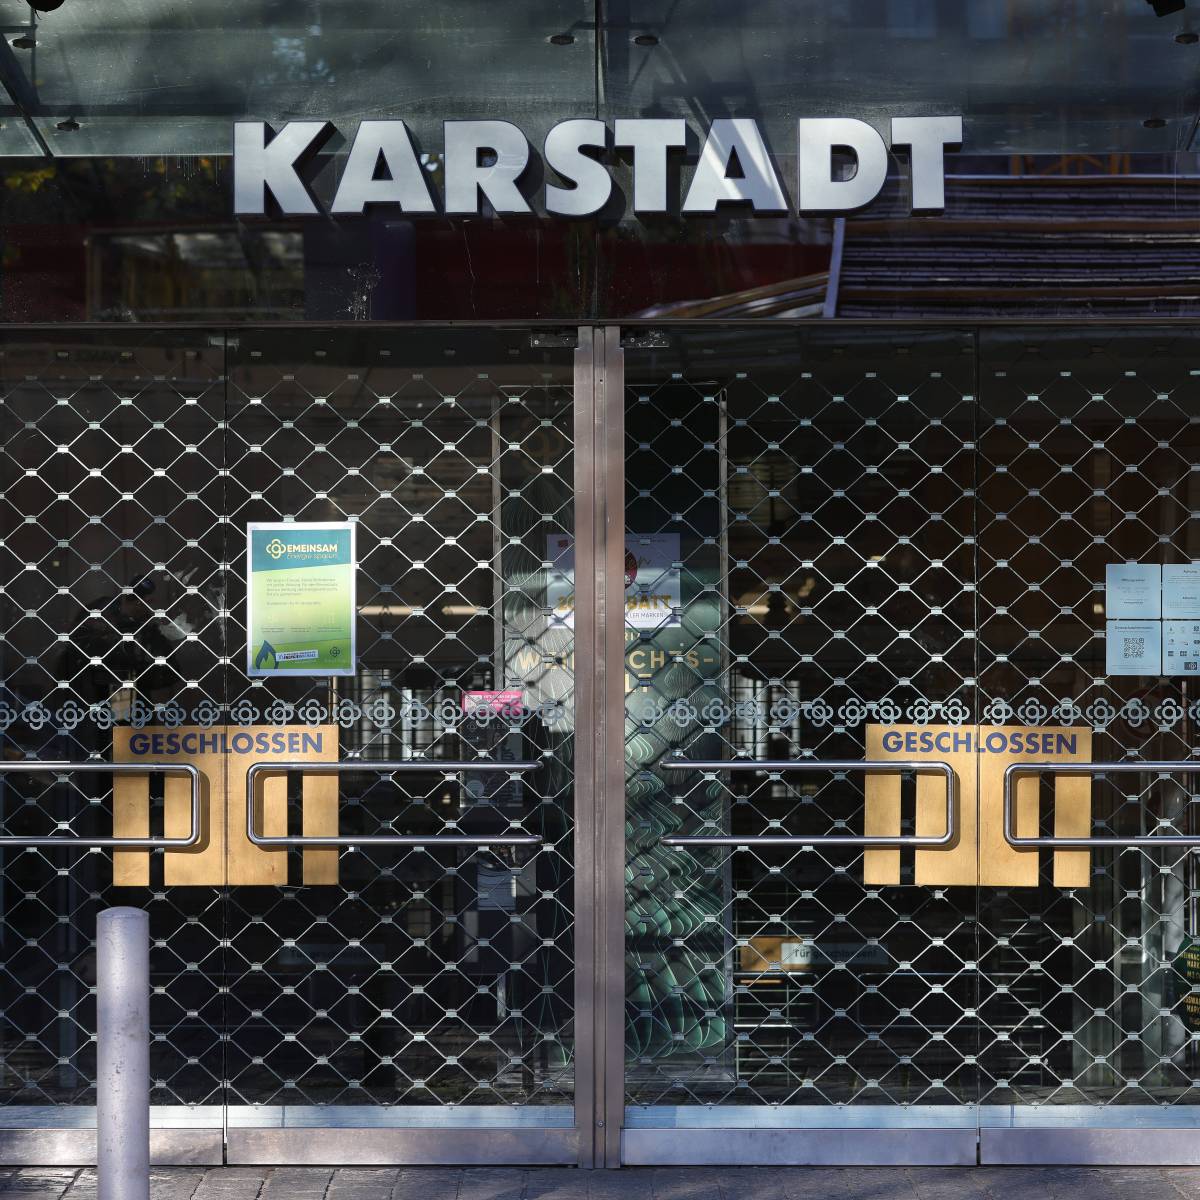 Karstadt in Dortmund kapituliert vor Energiekrise – bittere Nachricht für Kunden